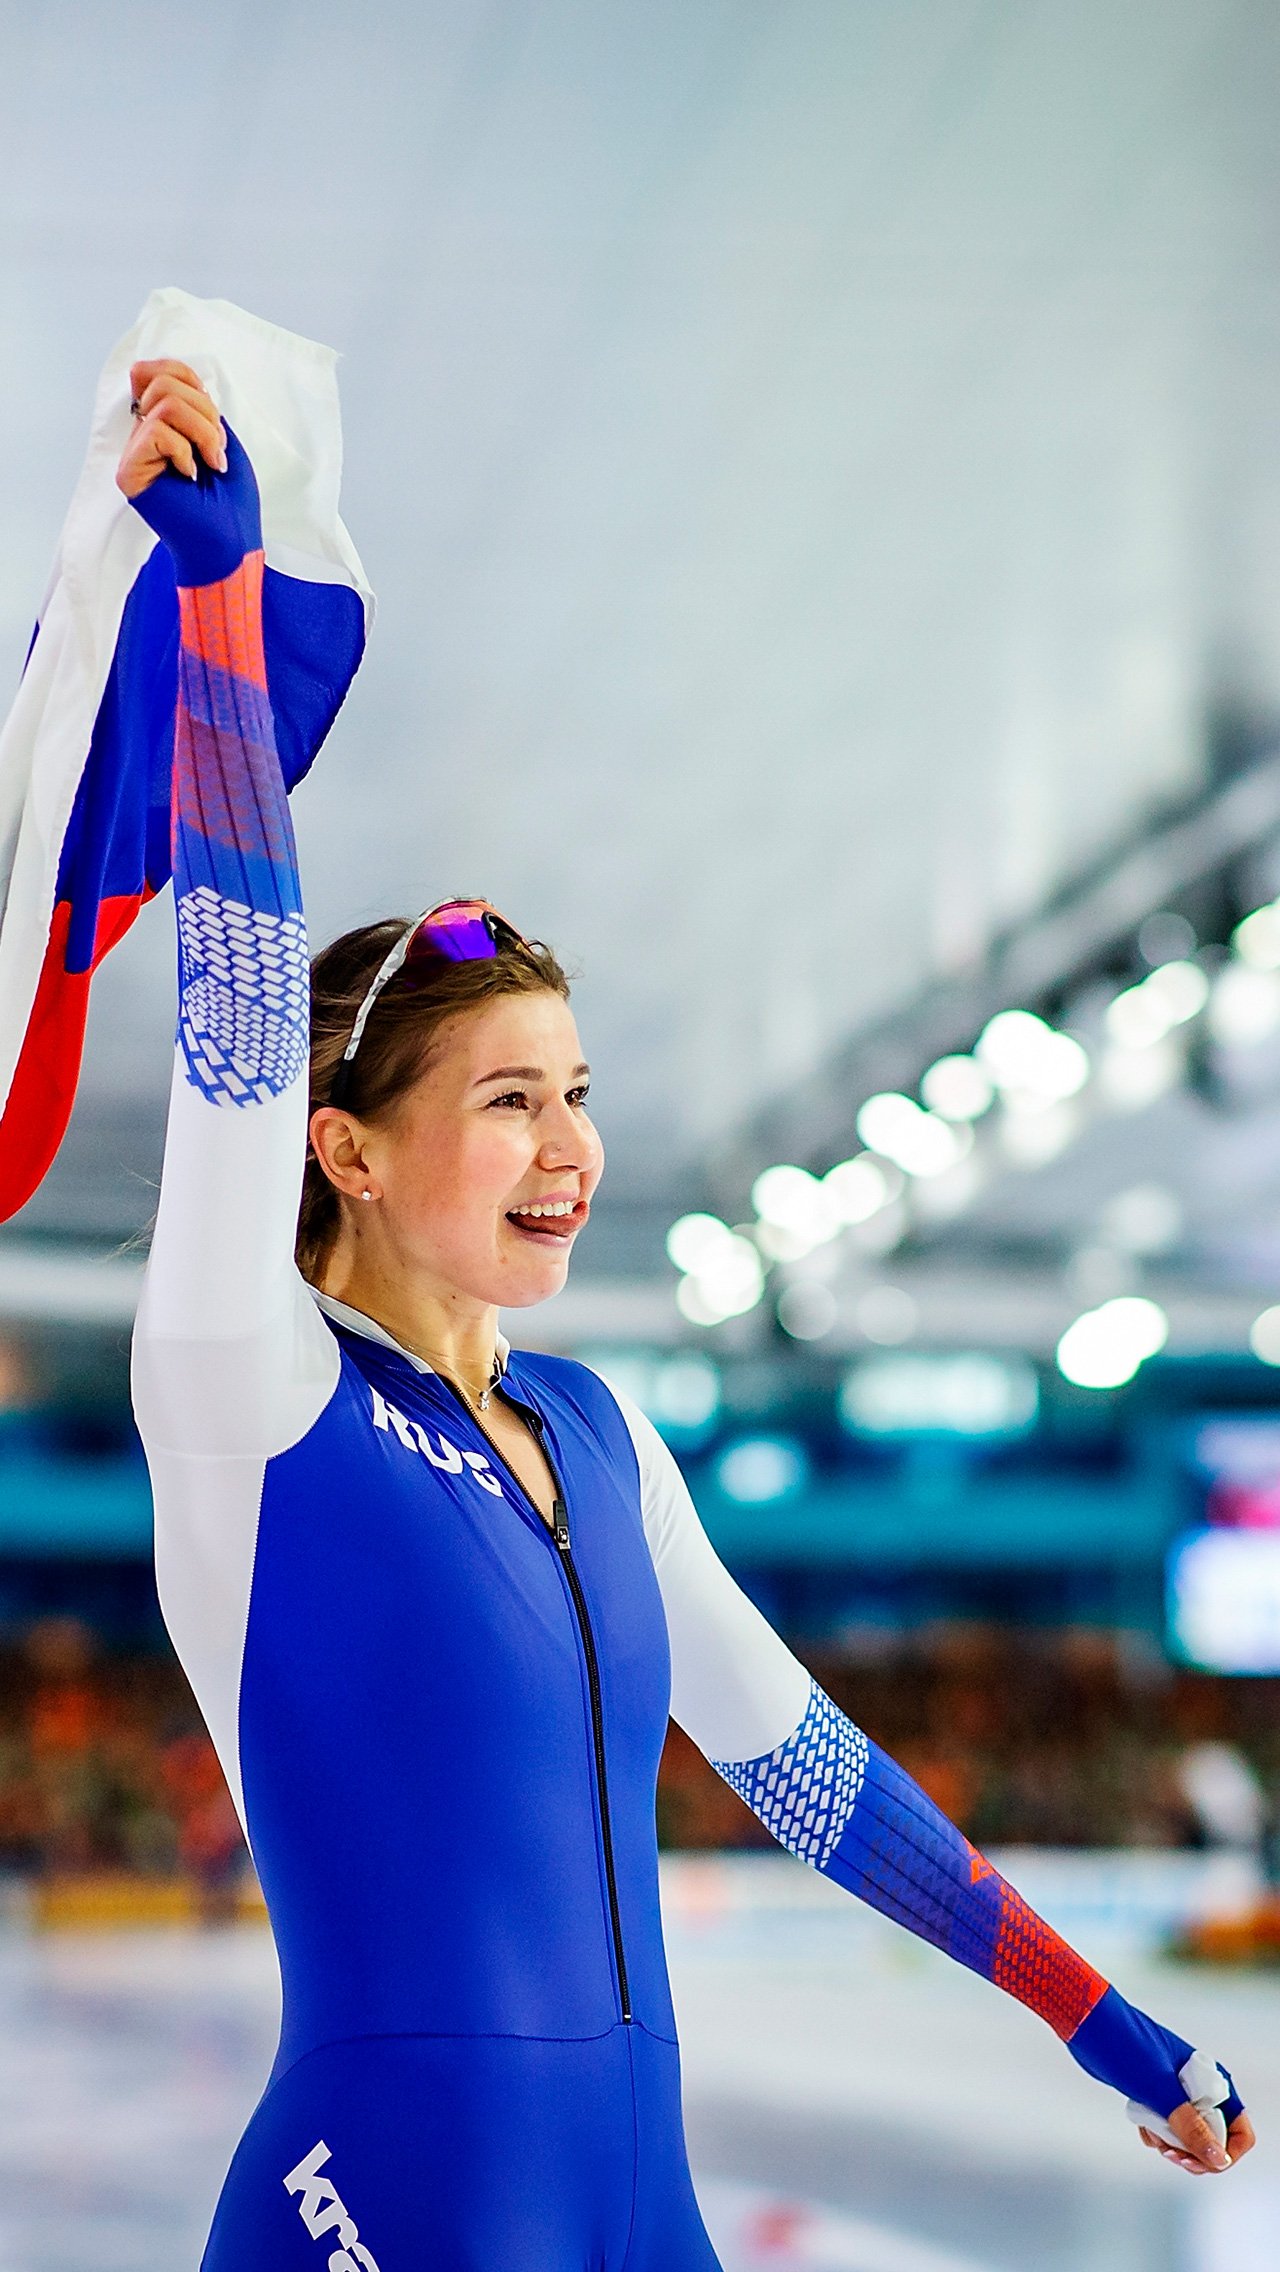 «Я хочу показать хороший результат на Олимпийских играх 2022 года в Пекине, чтобы вдохновить молодых российских конькобежцев», — сказала Фаткулина.